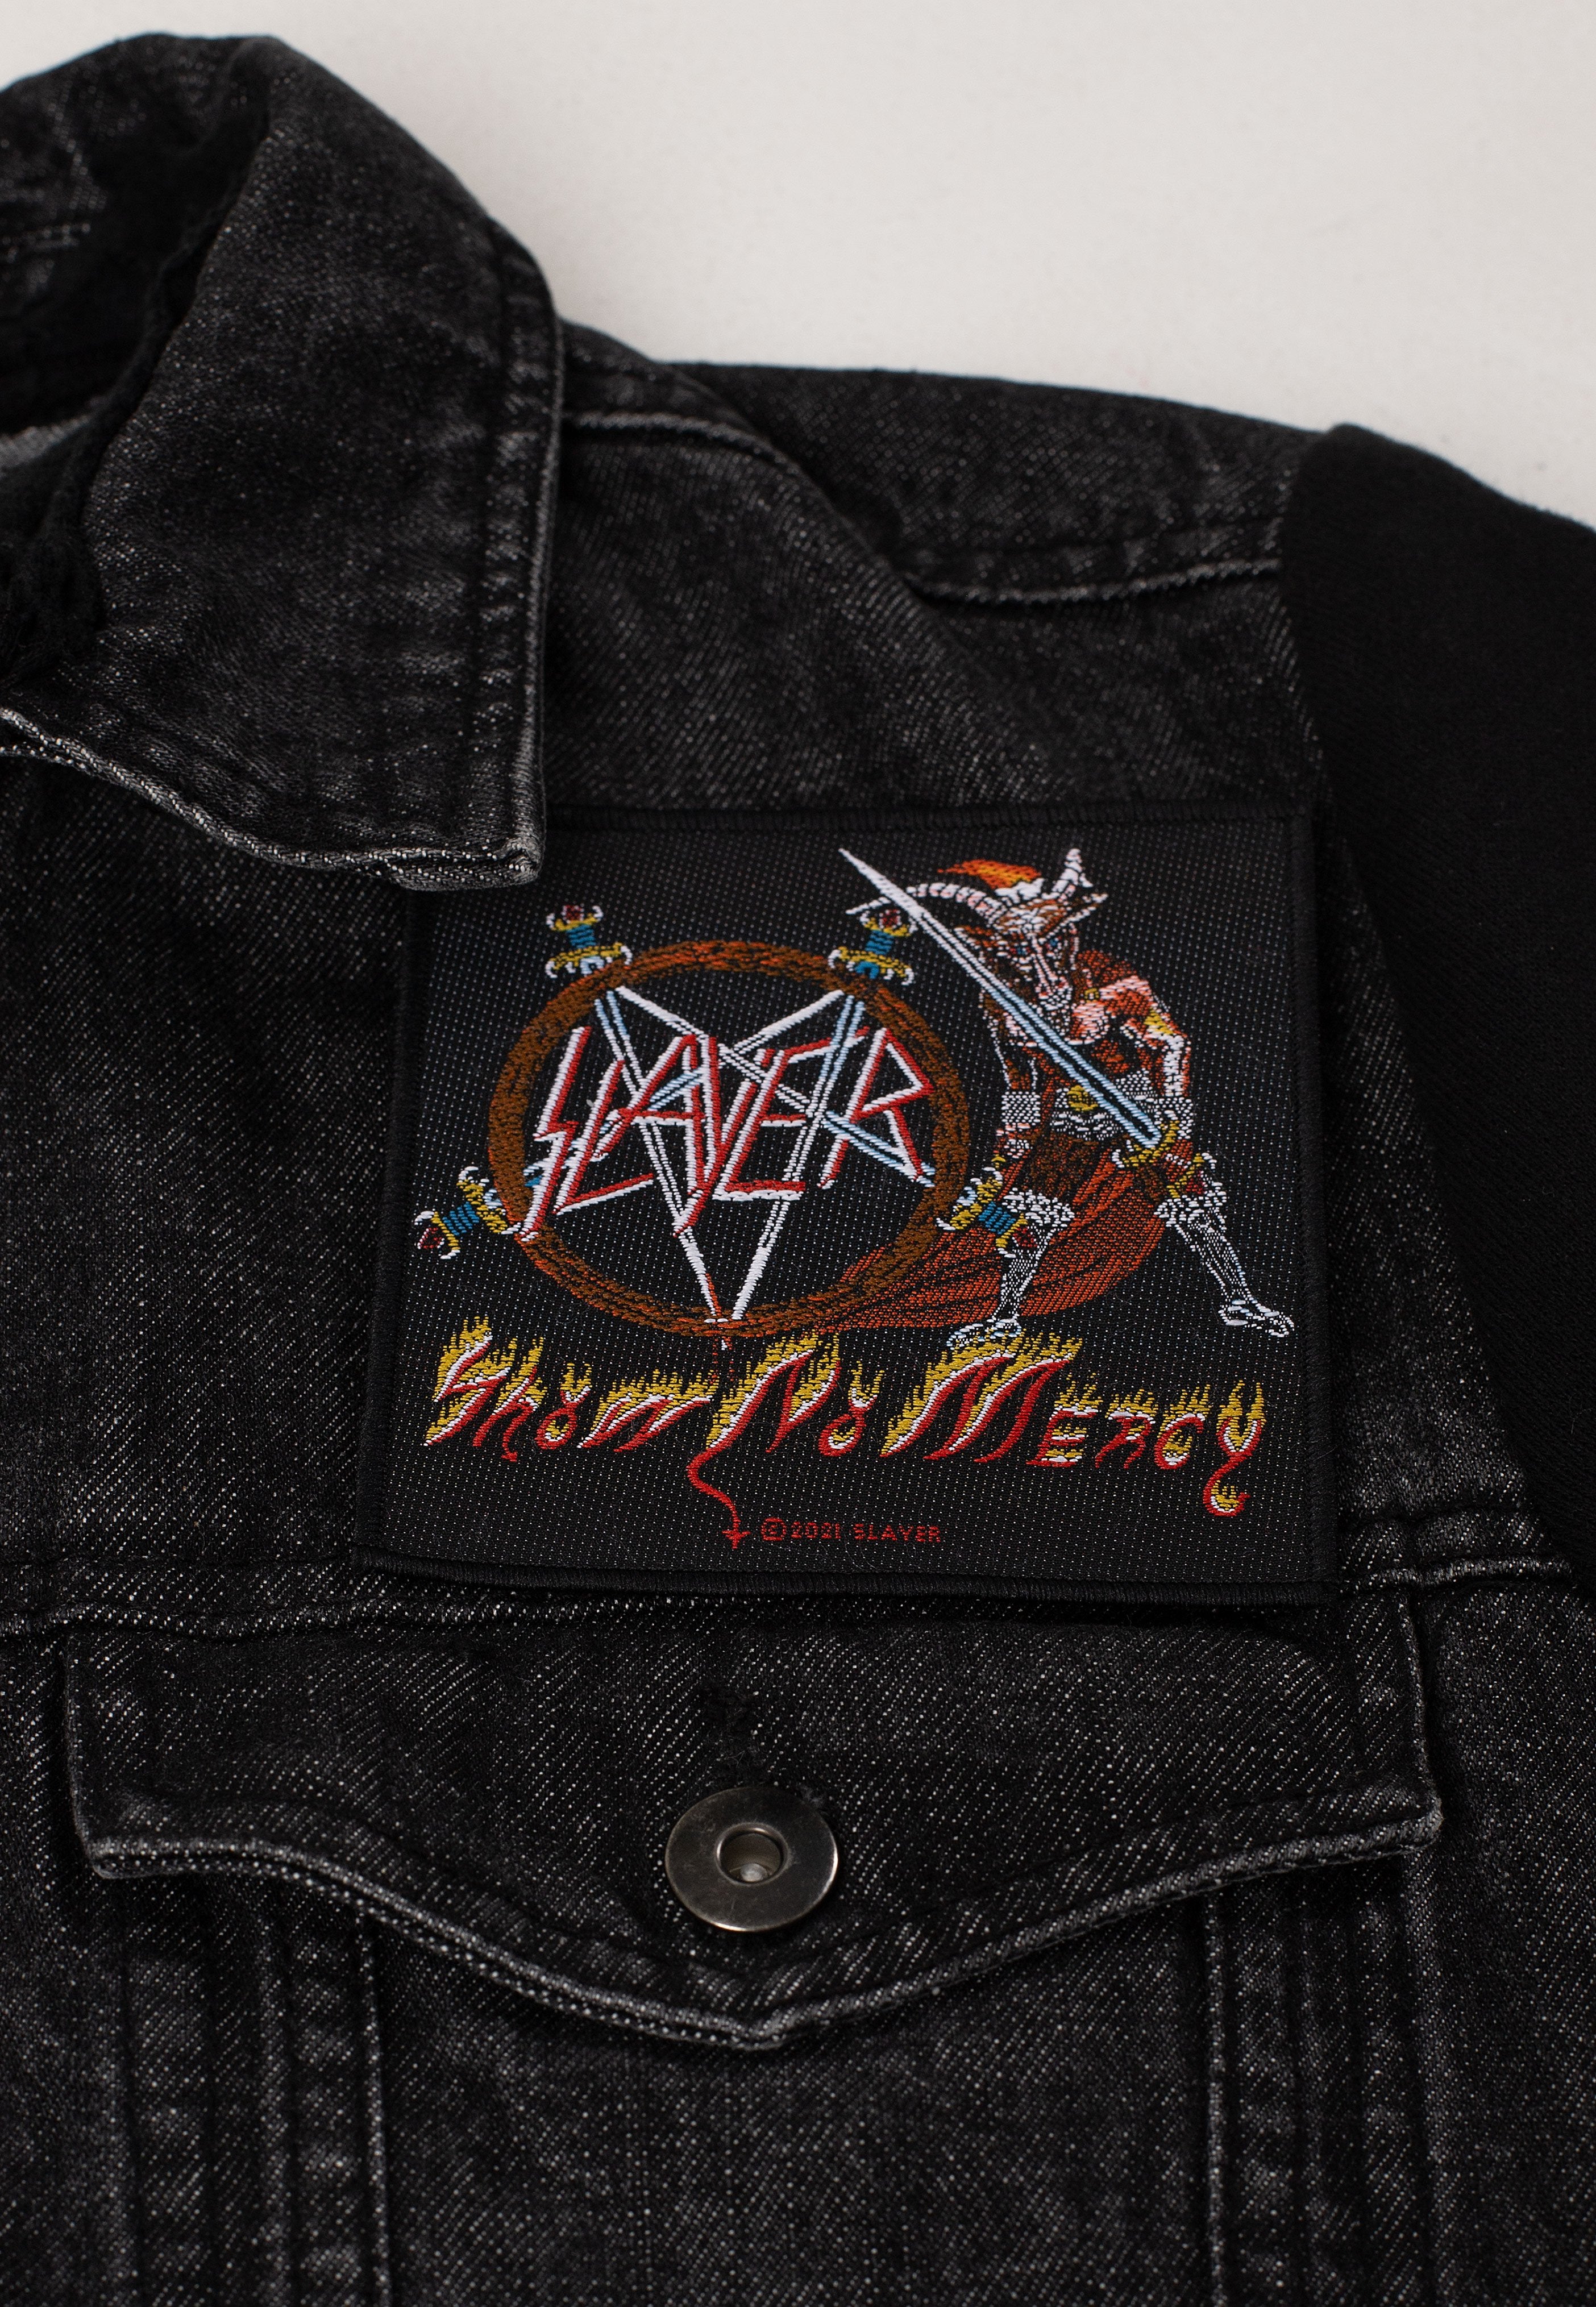 Slayer - Show No Mercy - Patch